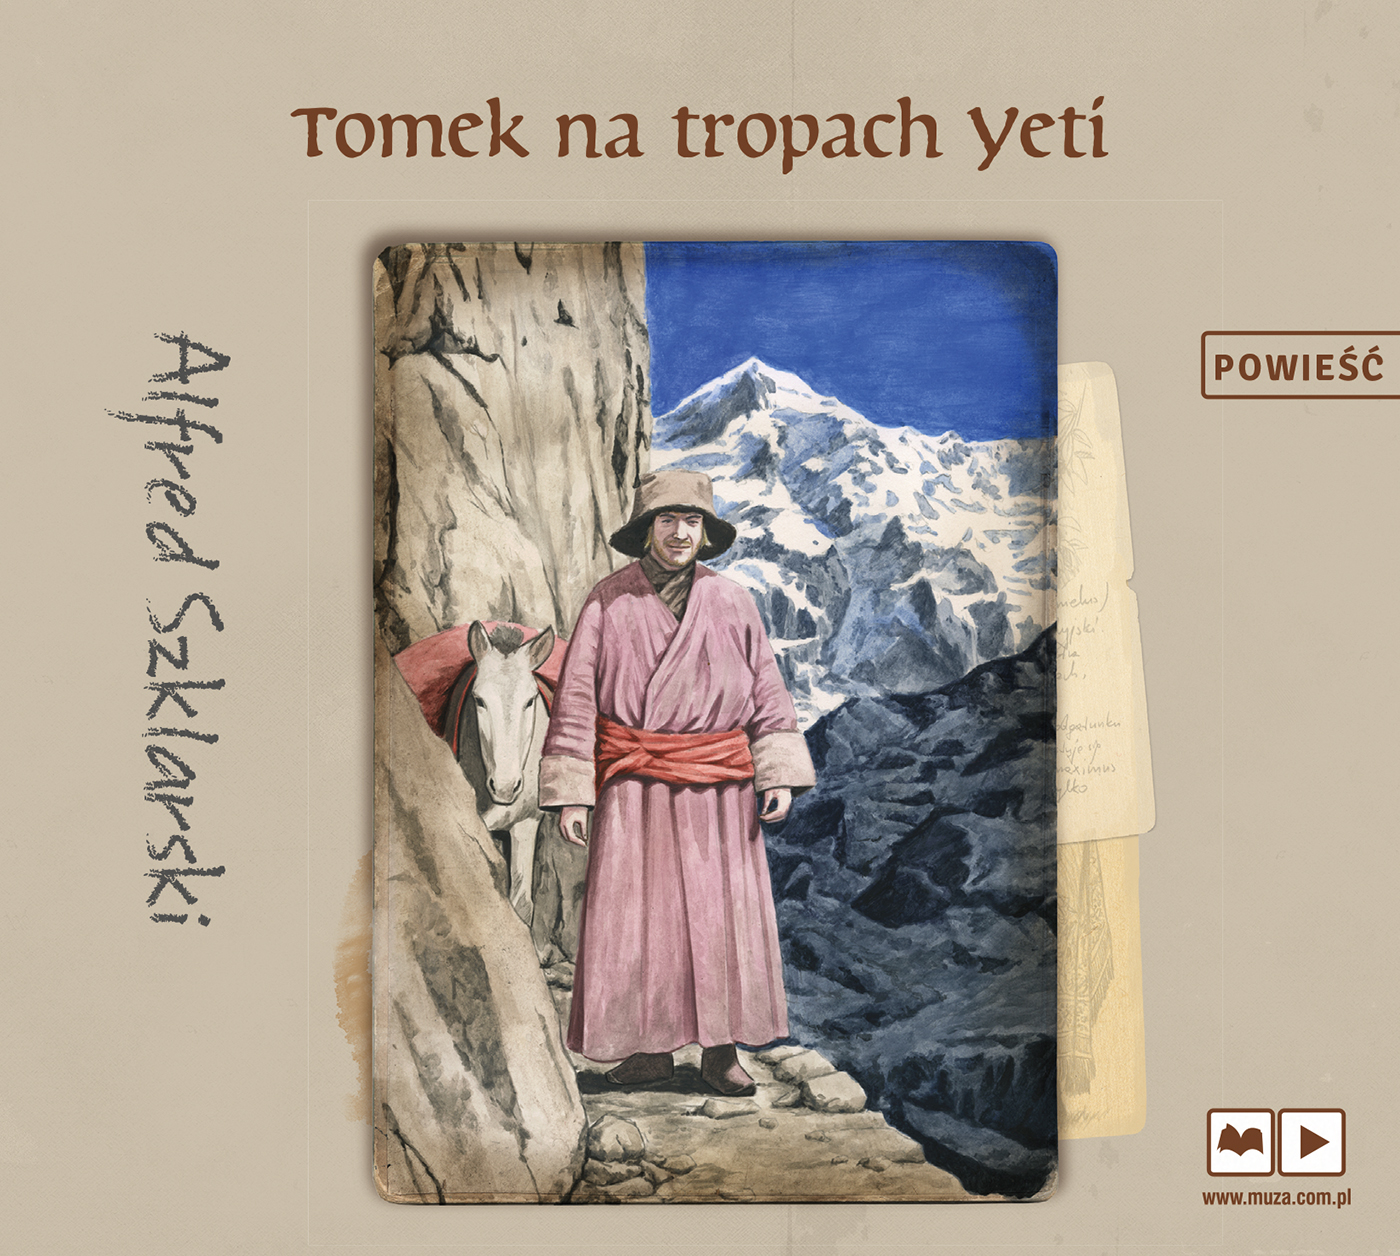 SZKLARSKI ALFRED – PRZYGODY TOMKA WILMOWSKIEGO 4. TOMEK NA TROPACH YETI